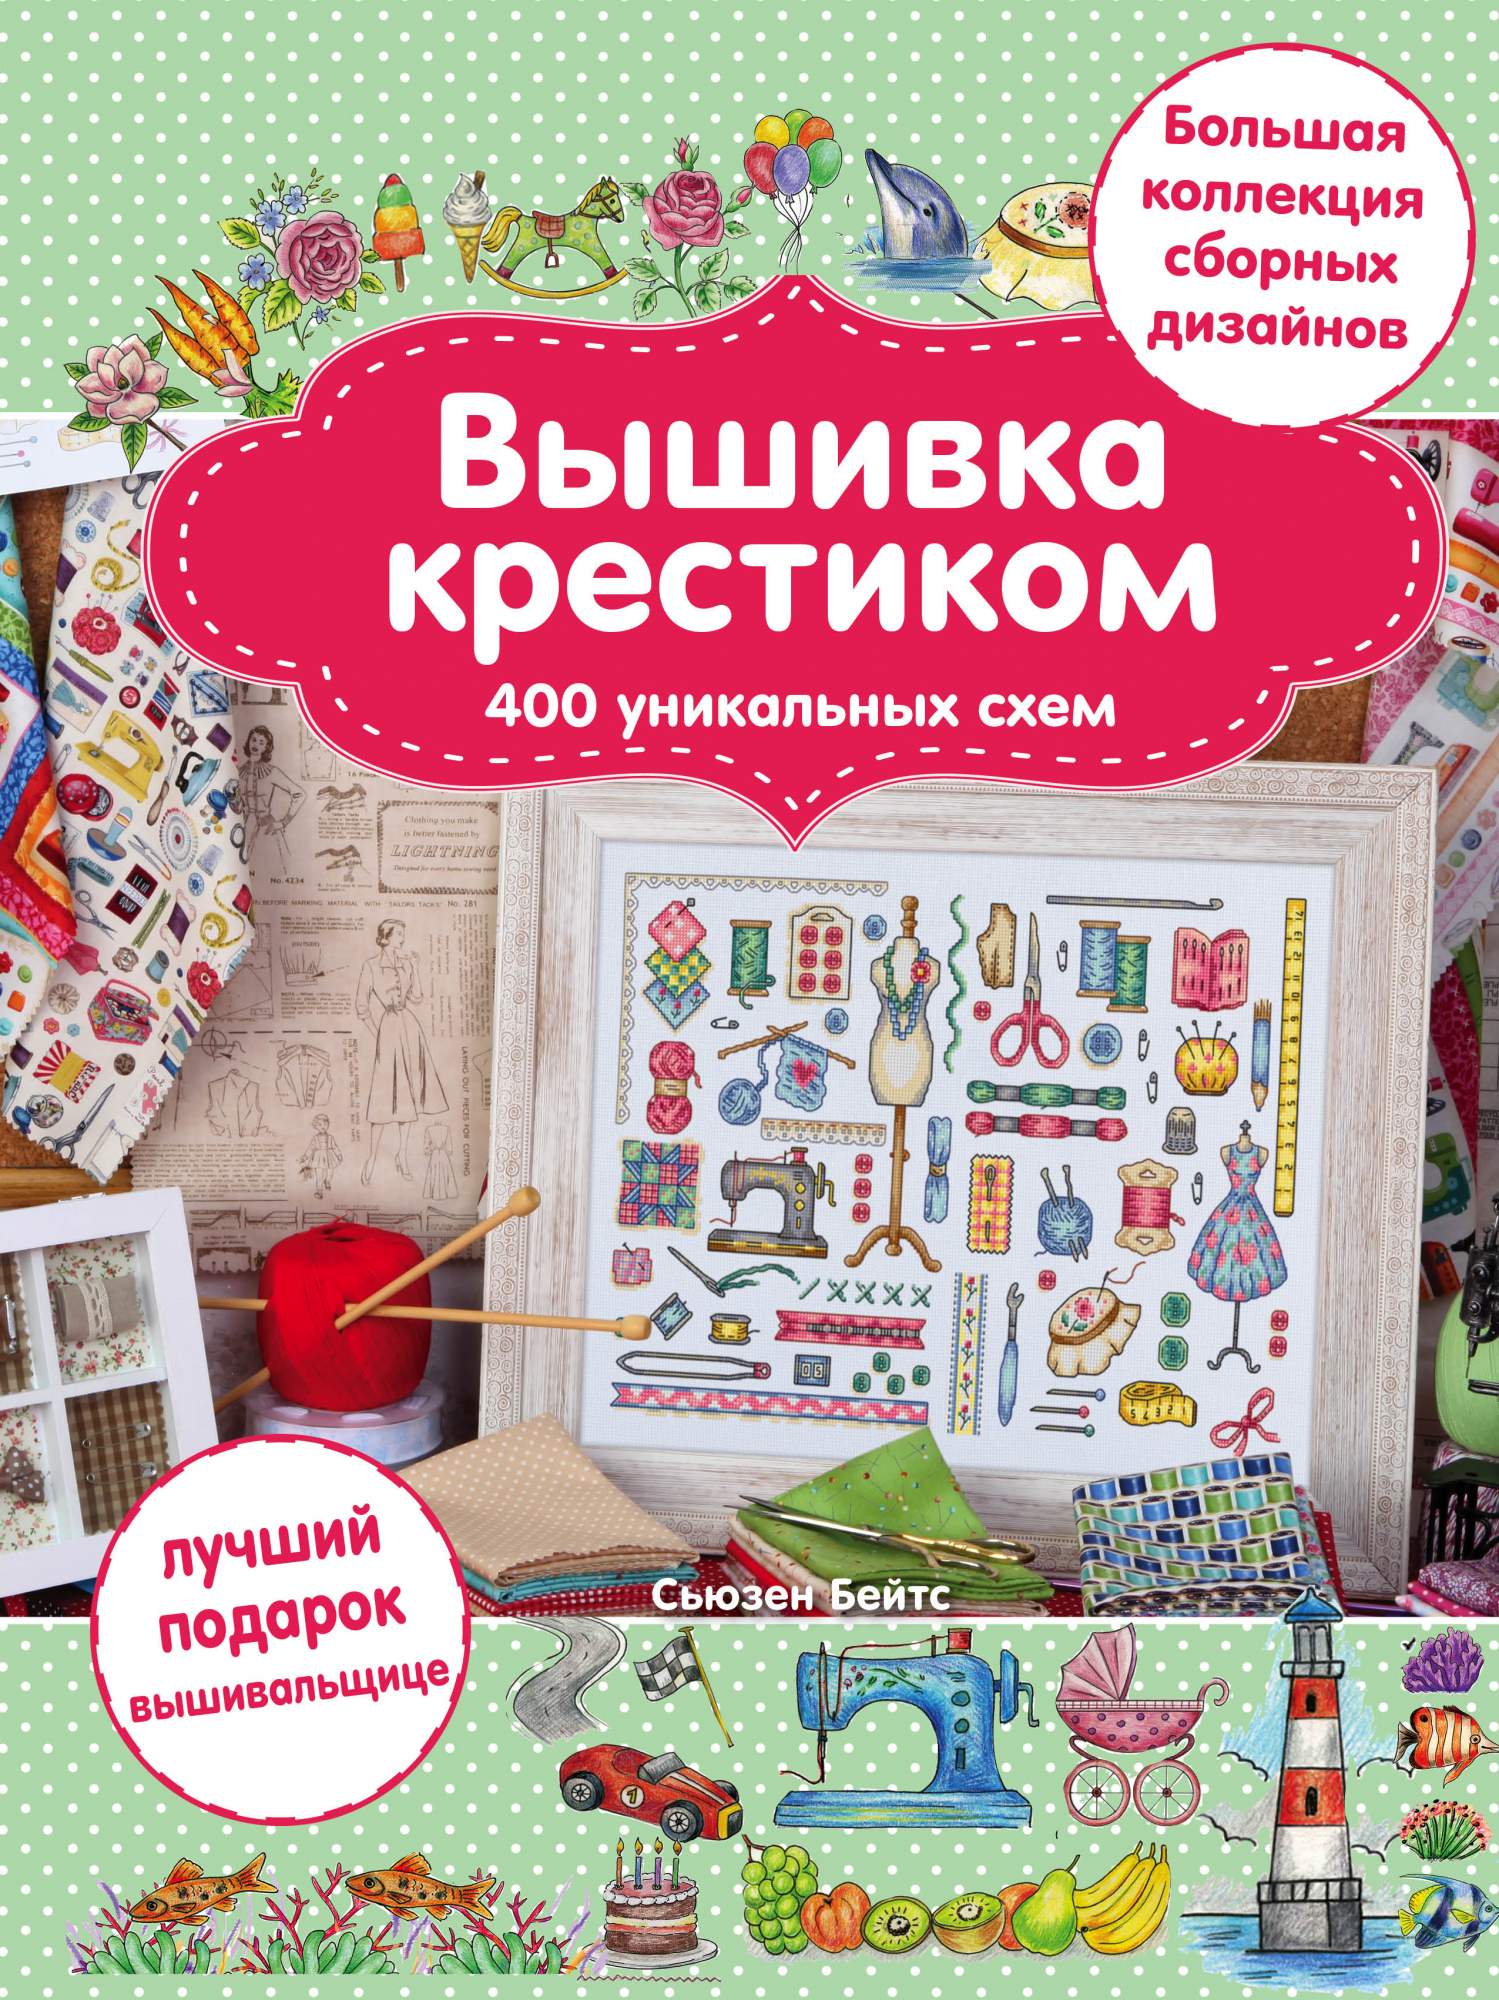 Вышивка на вязаных и трикотажных изделиях в Москве